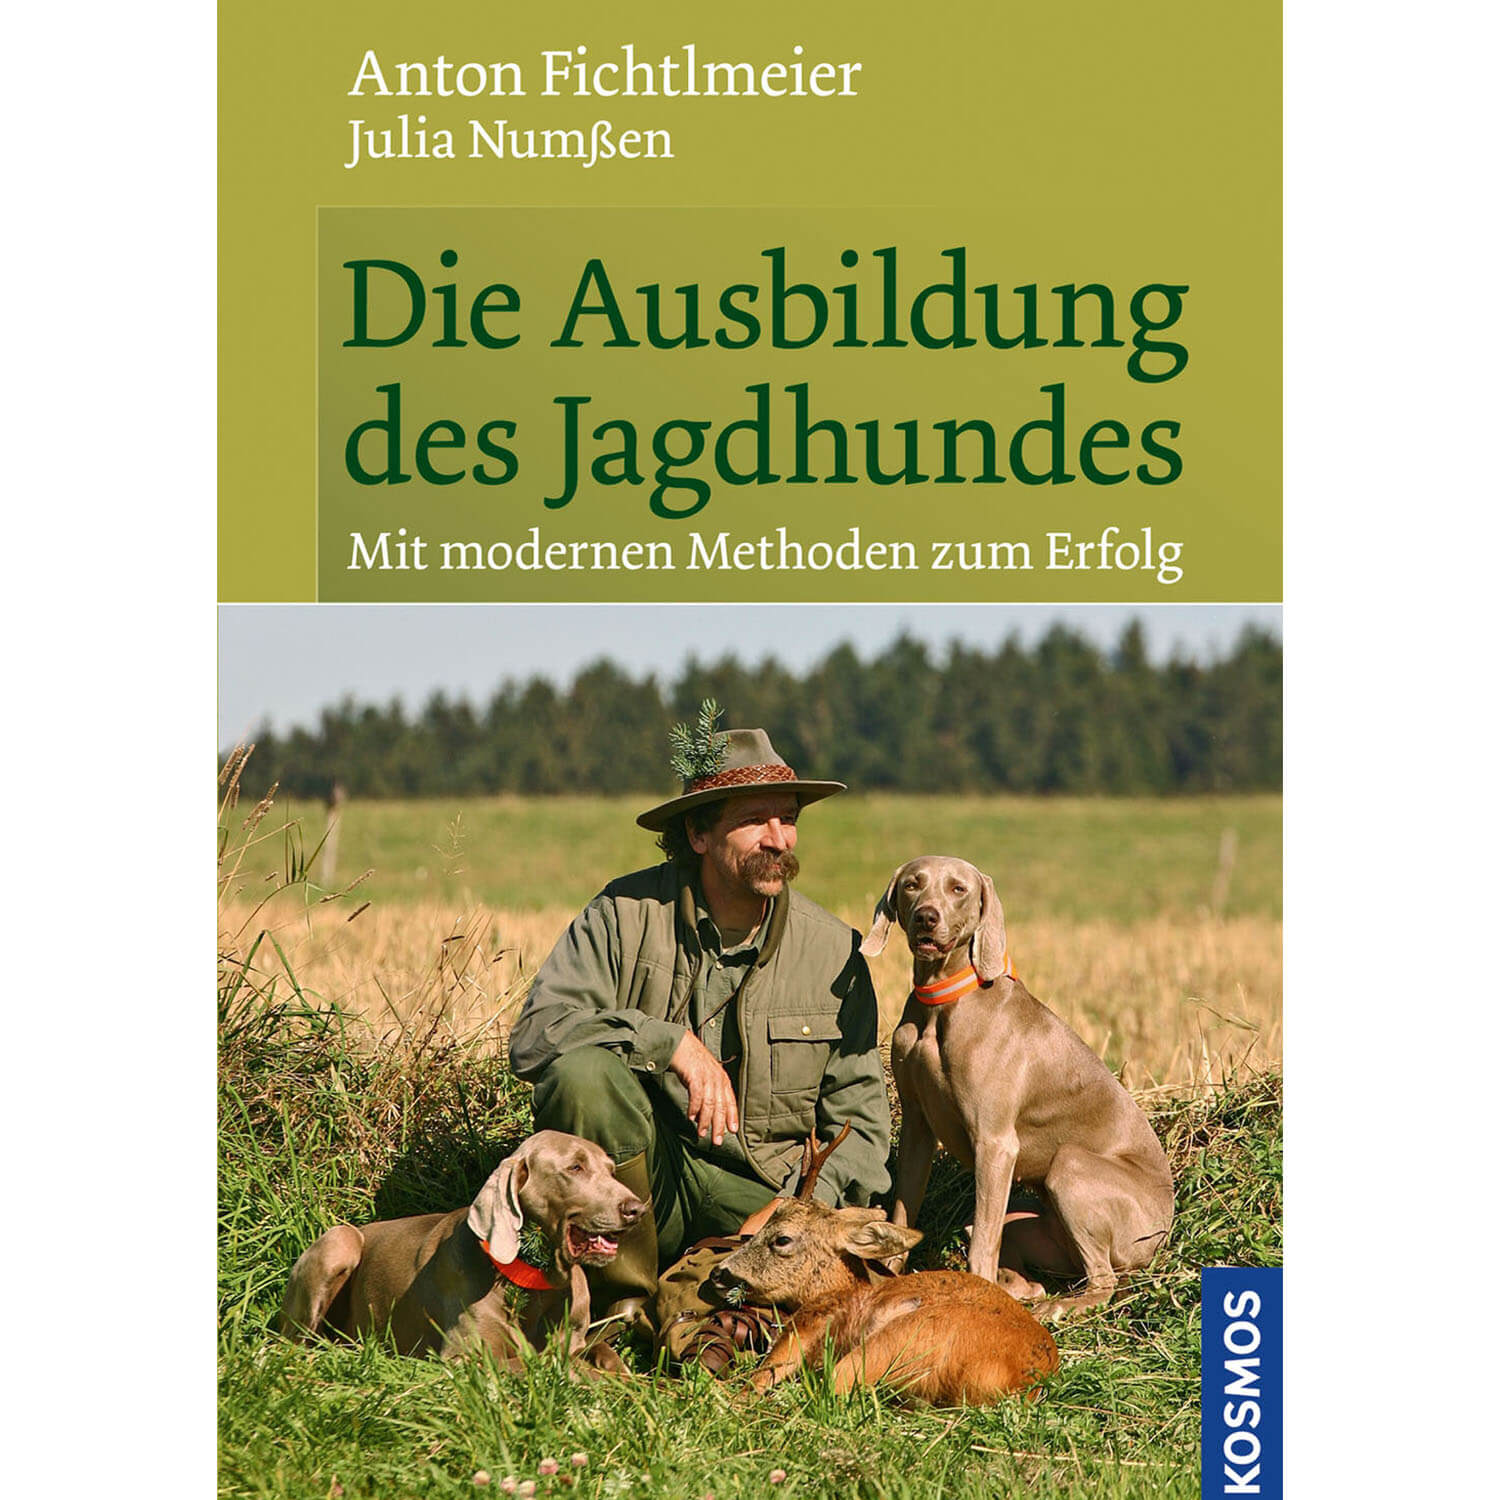 Die Ausbildung des Jagdhundes - Fichtlmeier & Numßen - Jagdbücher